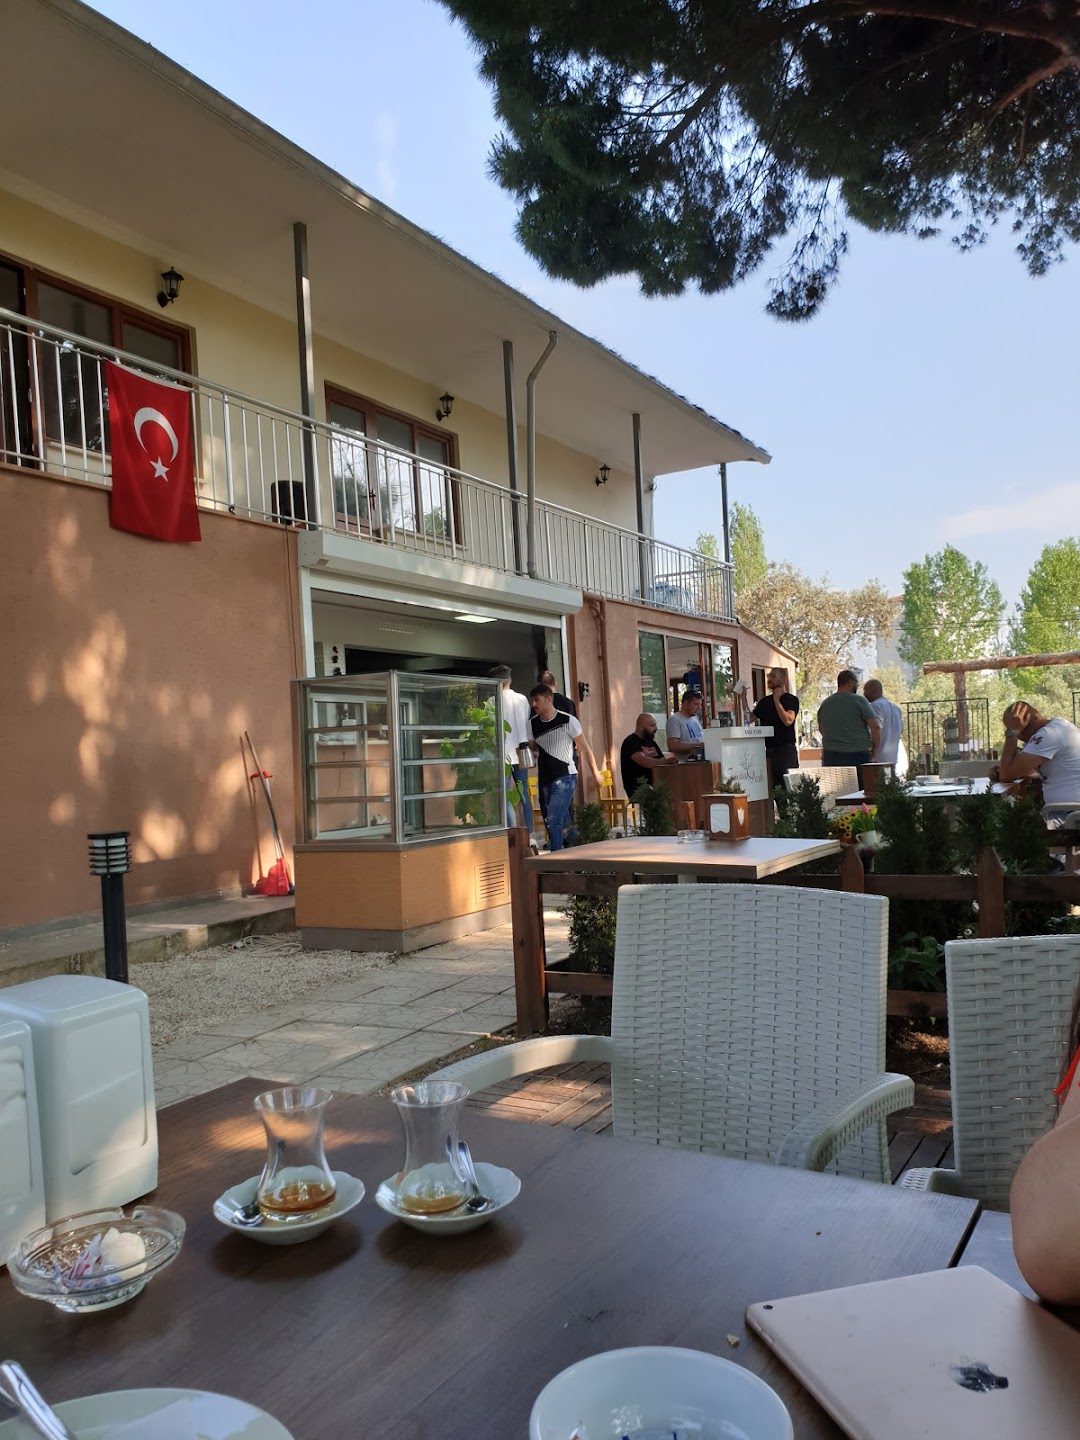 Zeytin Park Kafe Kahvalti